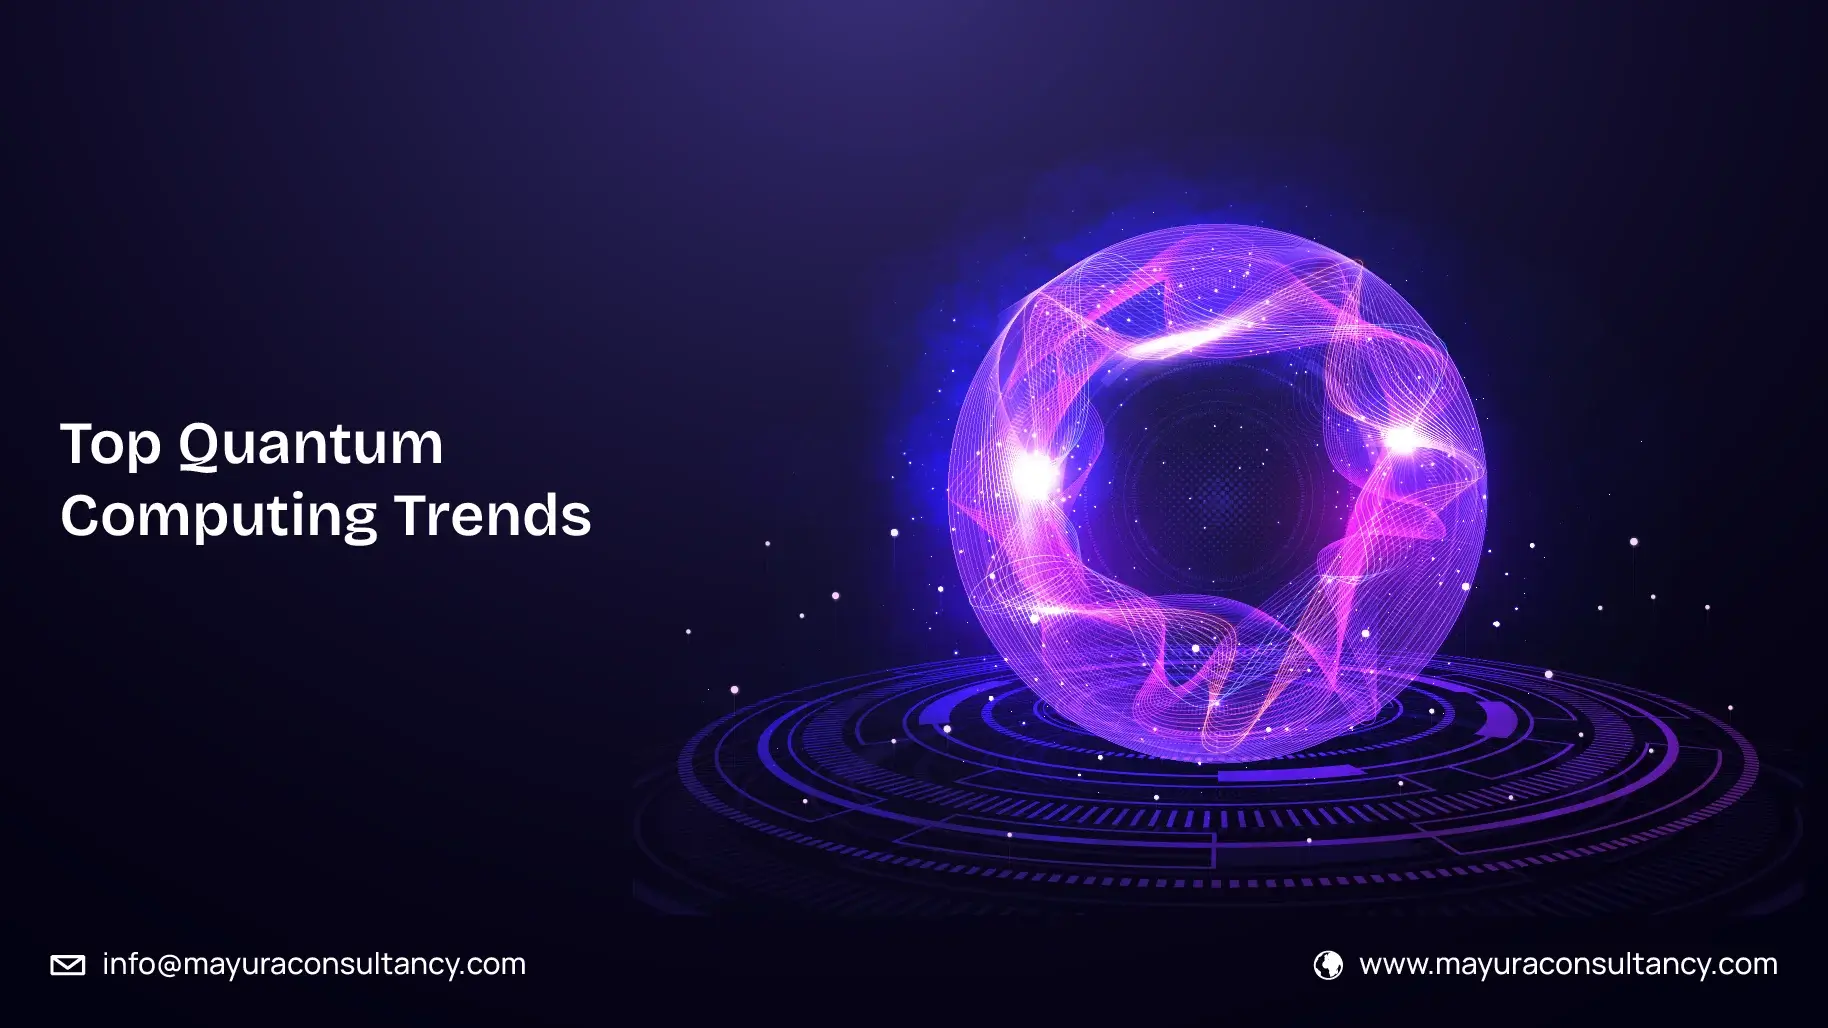 Top Quantum Computing Trends